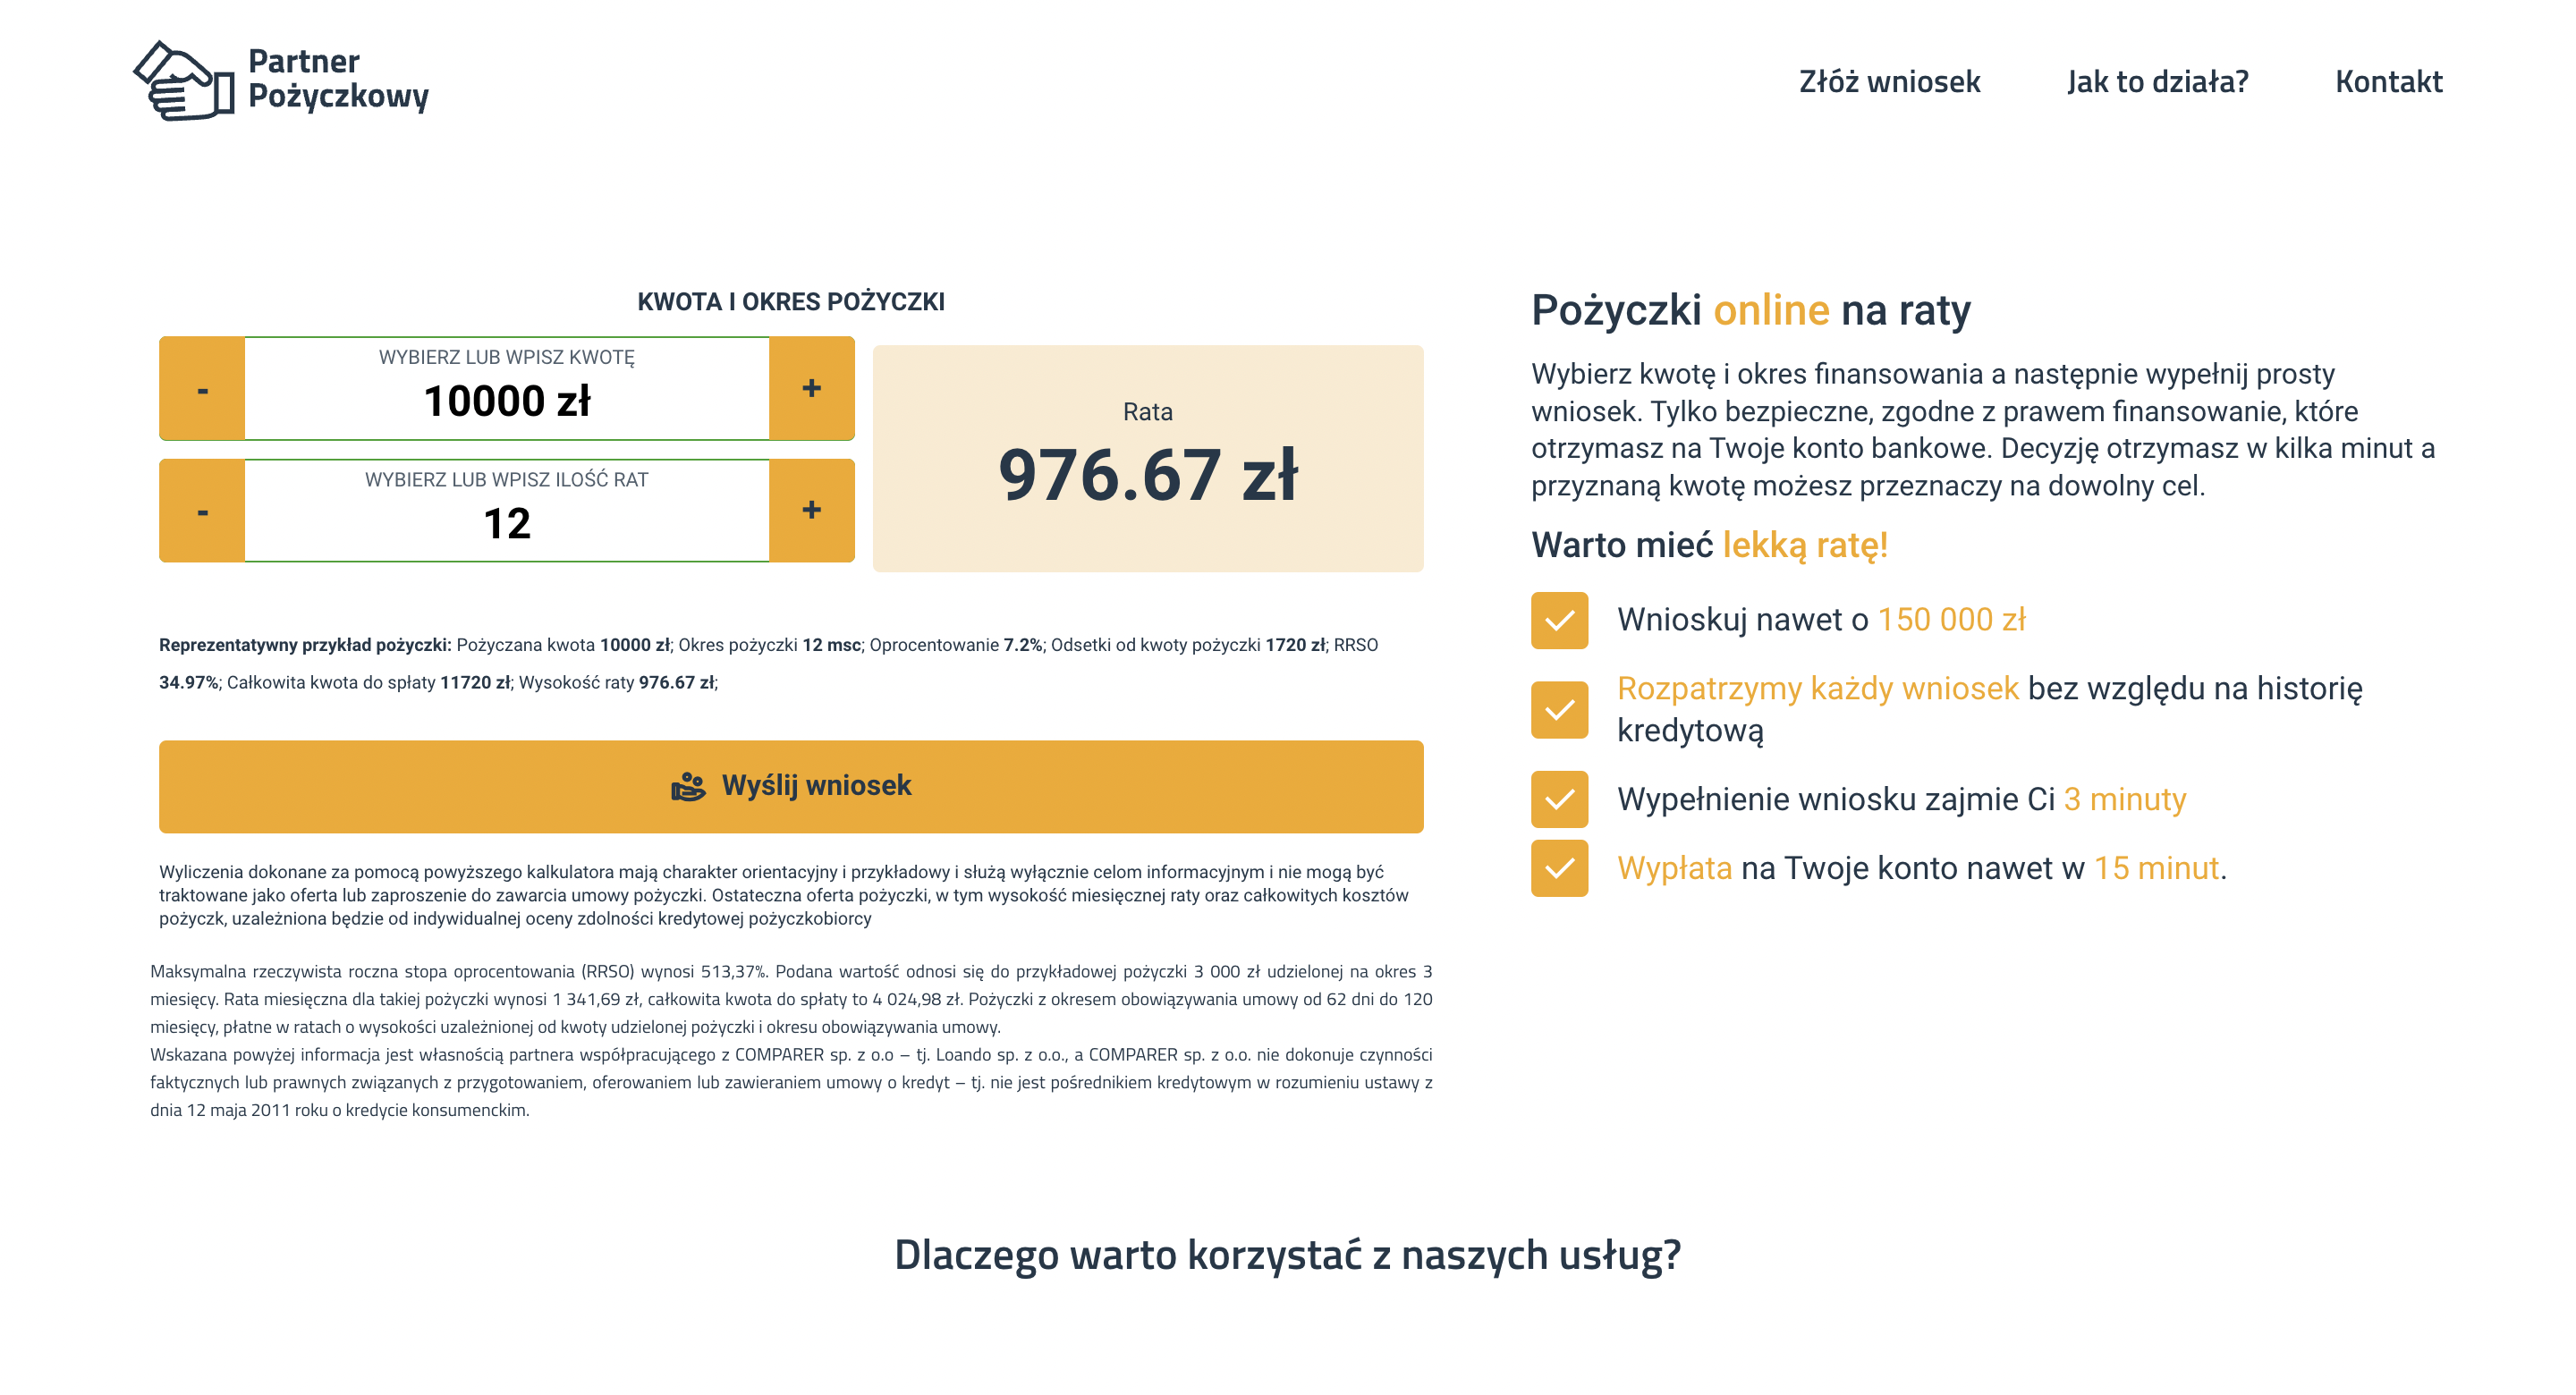 Partner Pożyczkowy pozyczki do 150 000 PLN